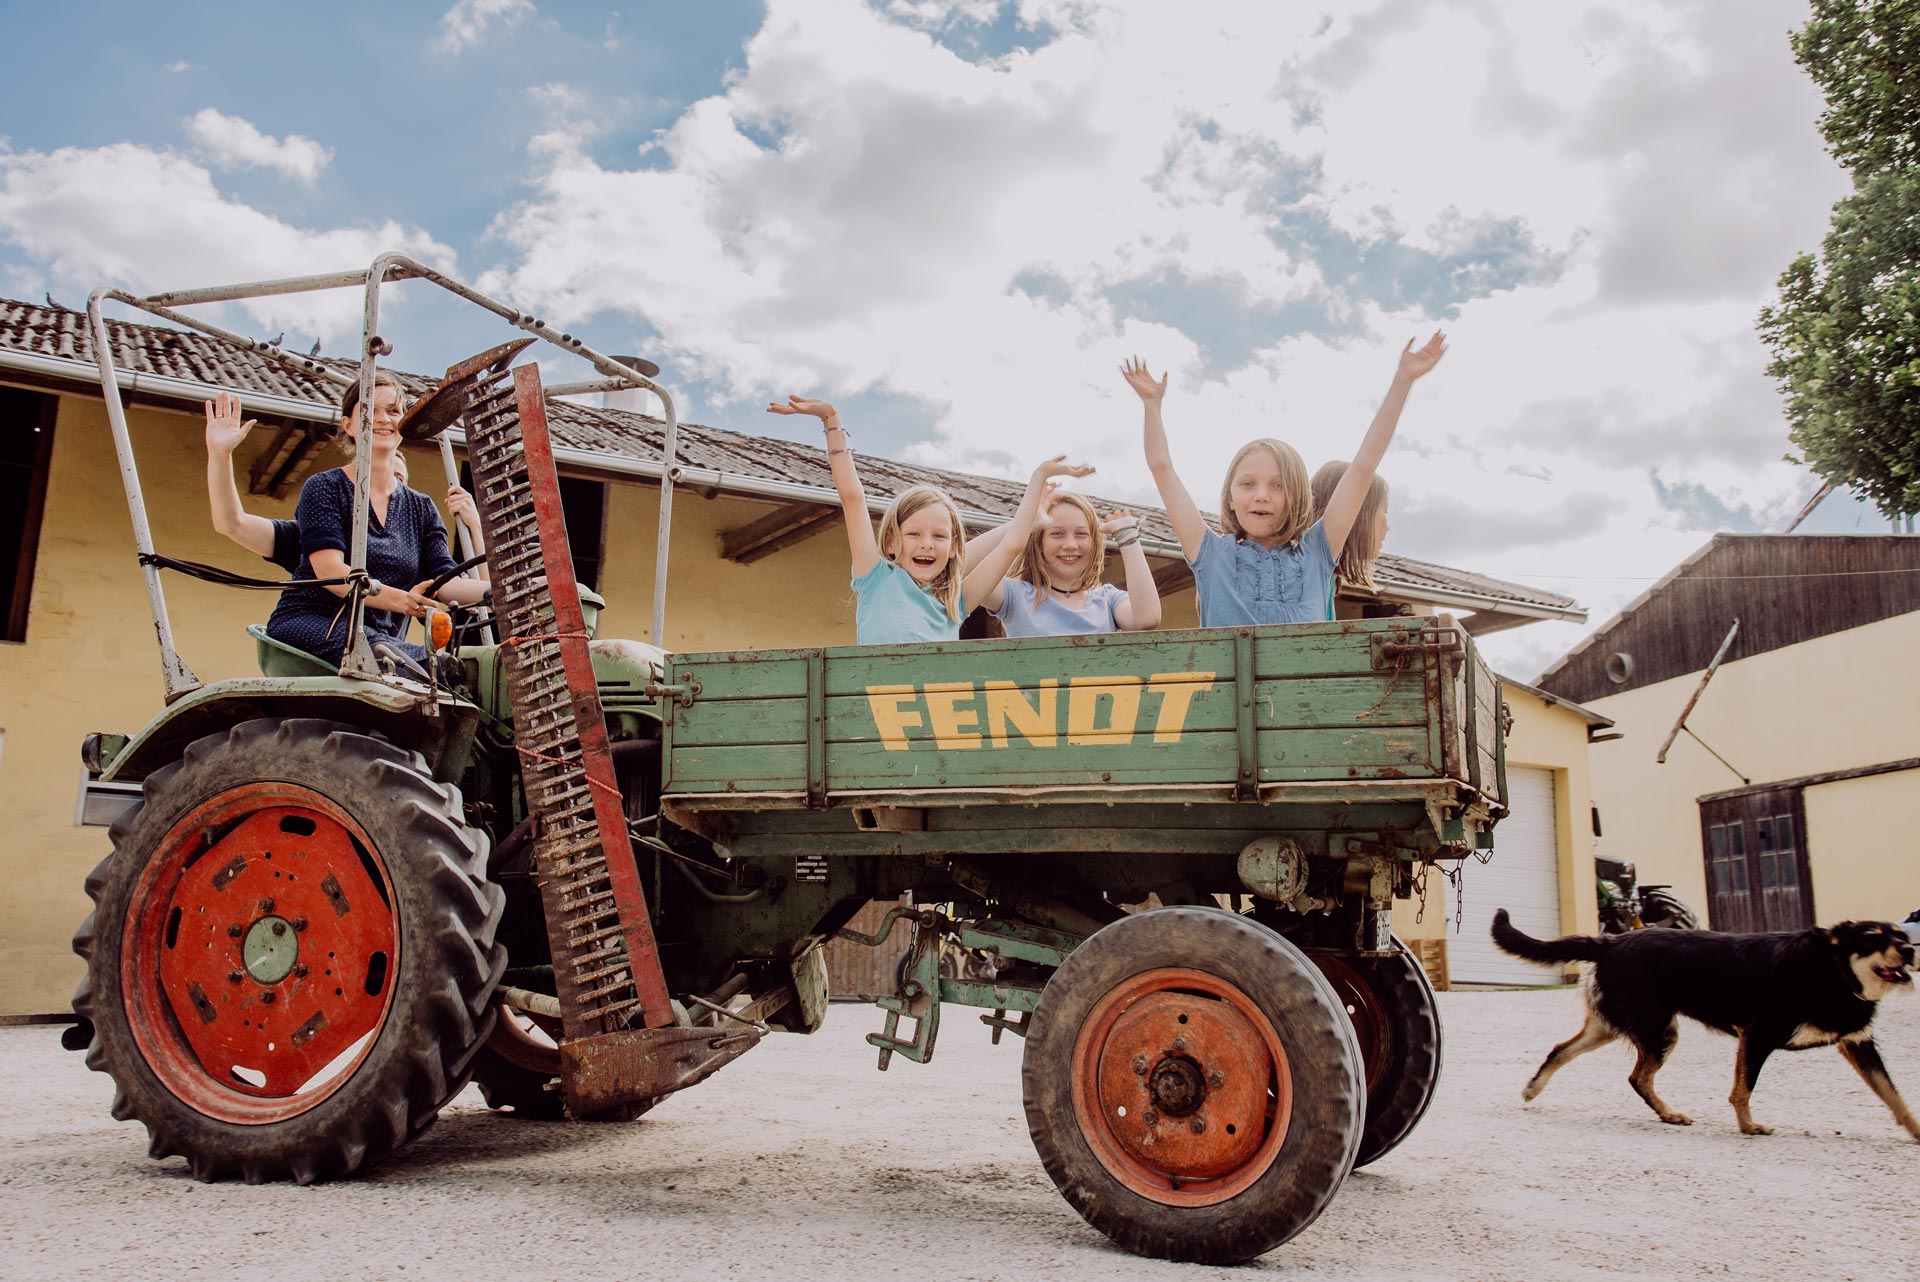 alter Fendt Traktor mit fröhlichen Kindern